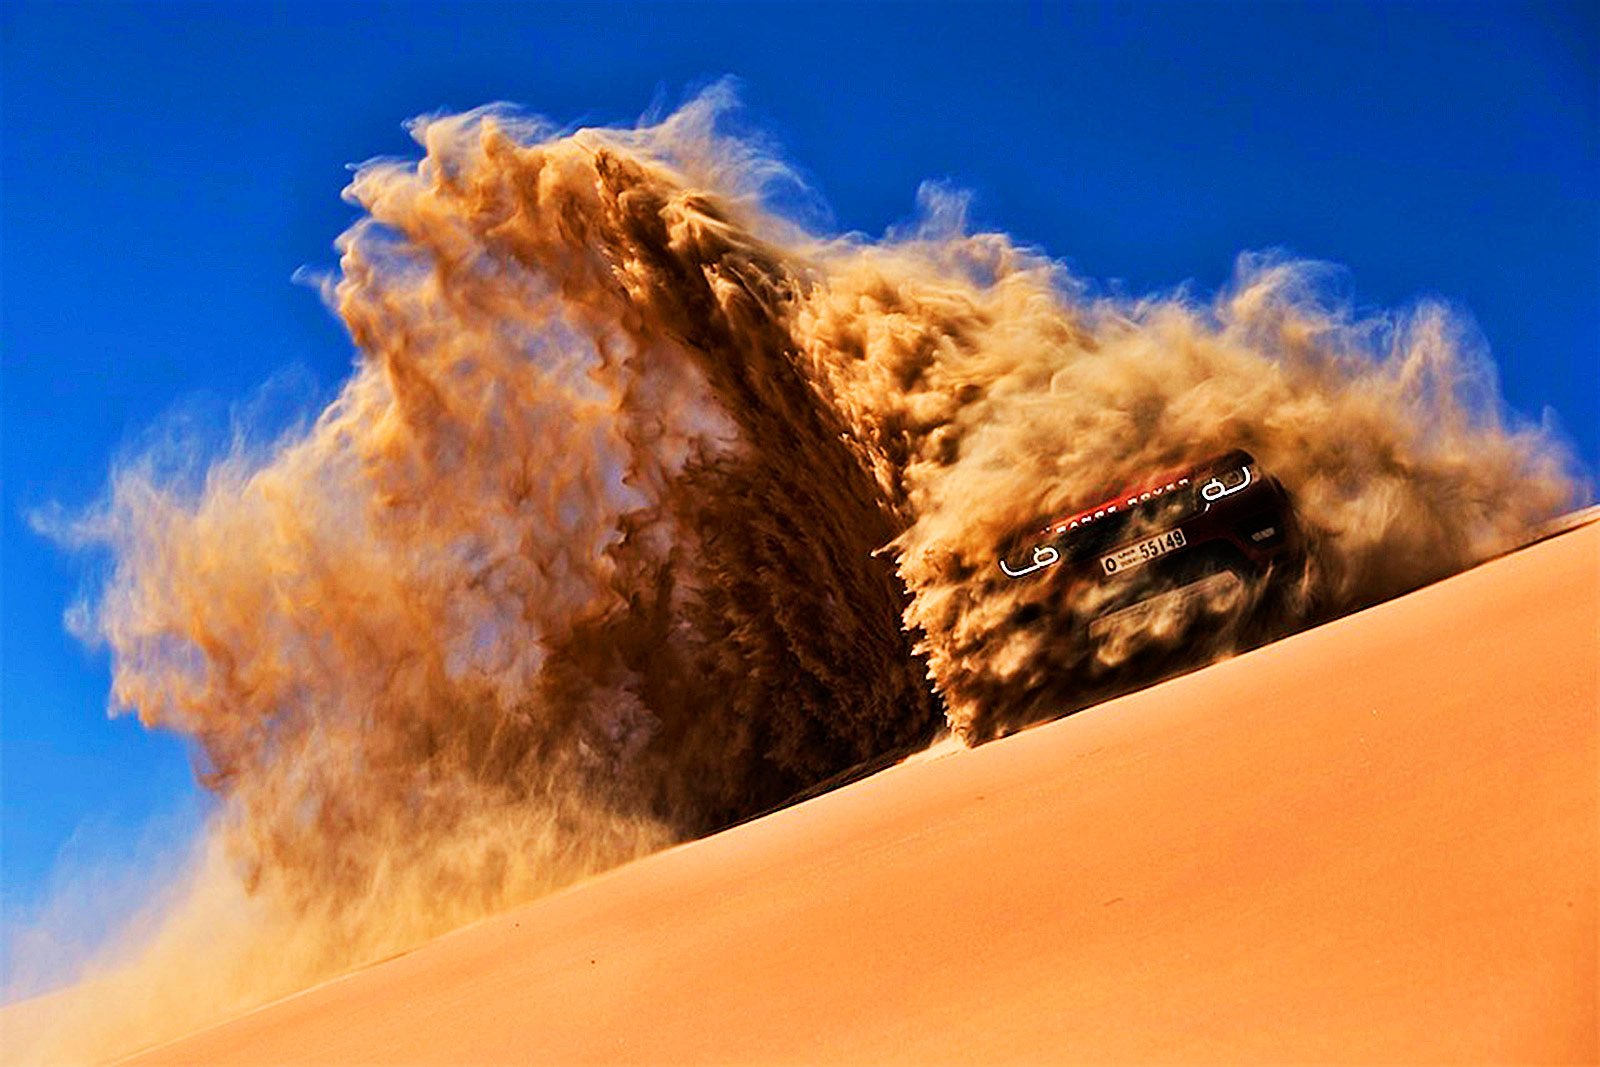 How to go to a desert jeep safari in Dubai